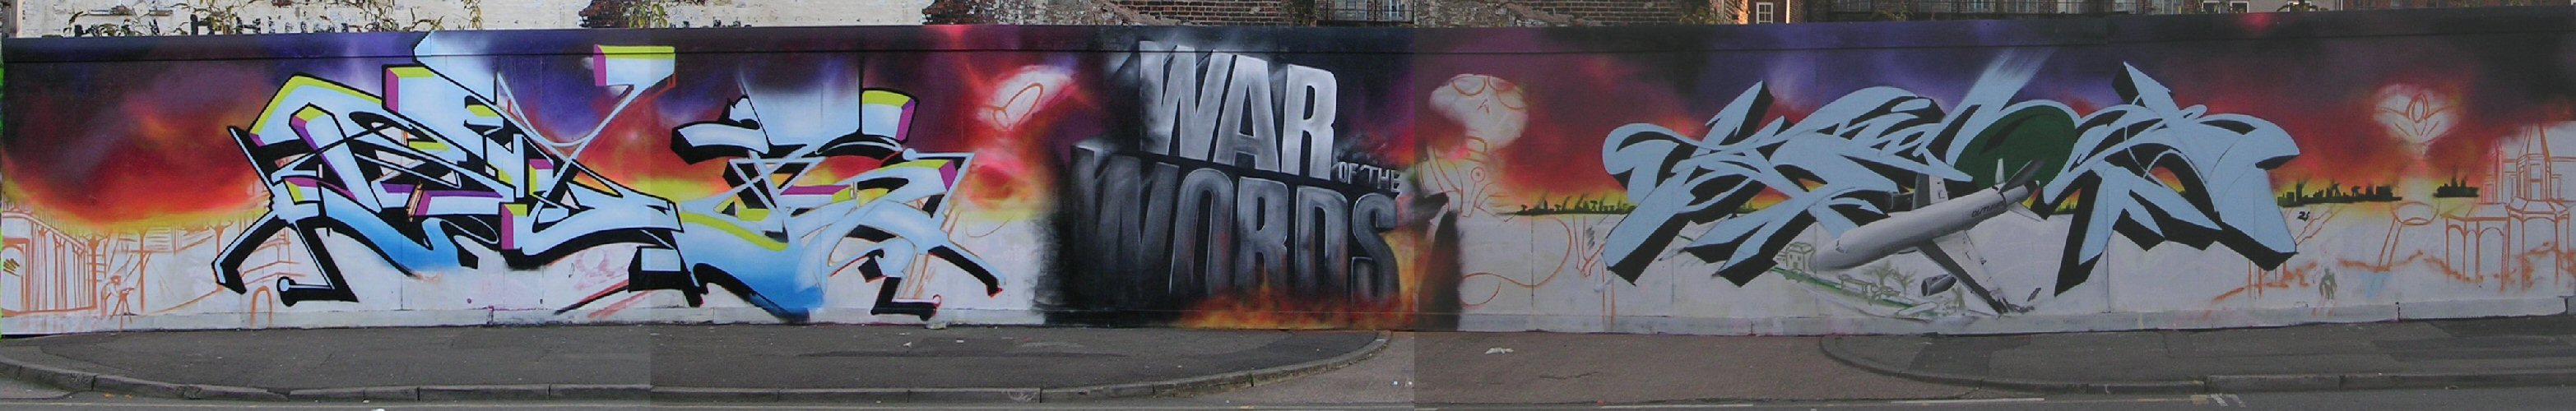 War of Words panorama 27/10/12